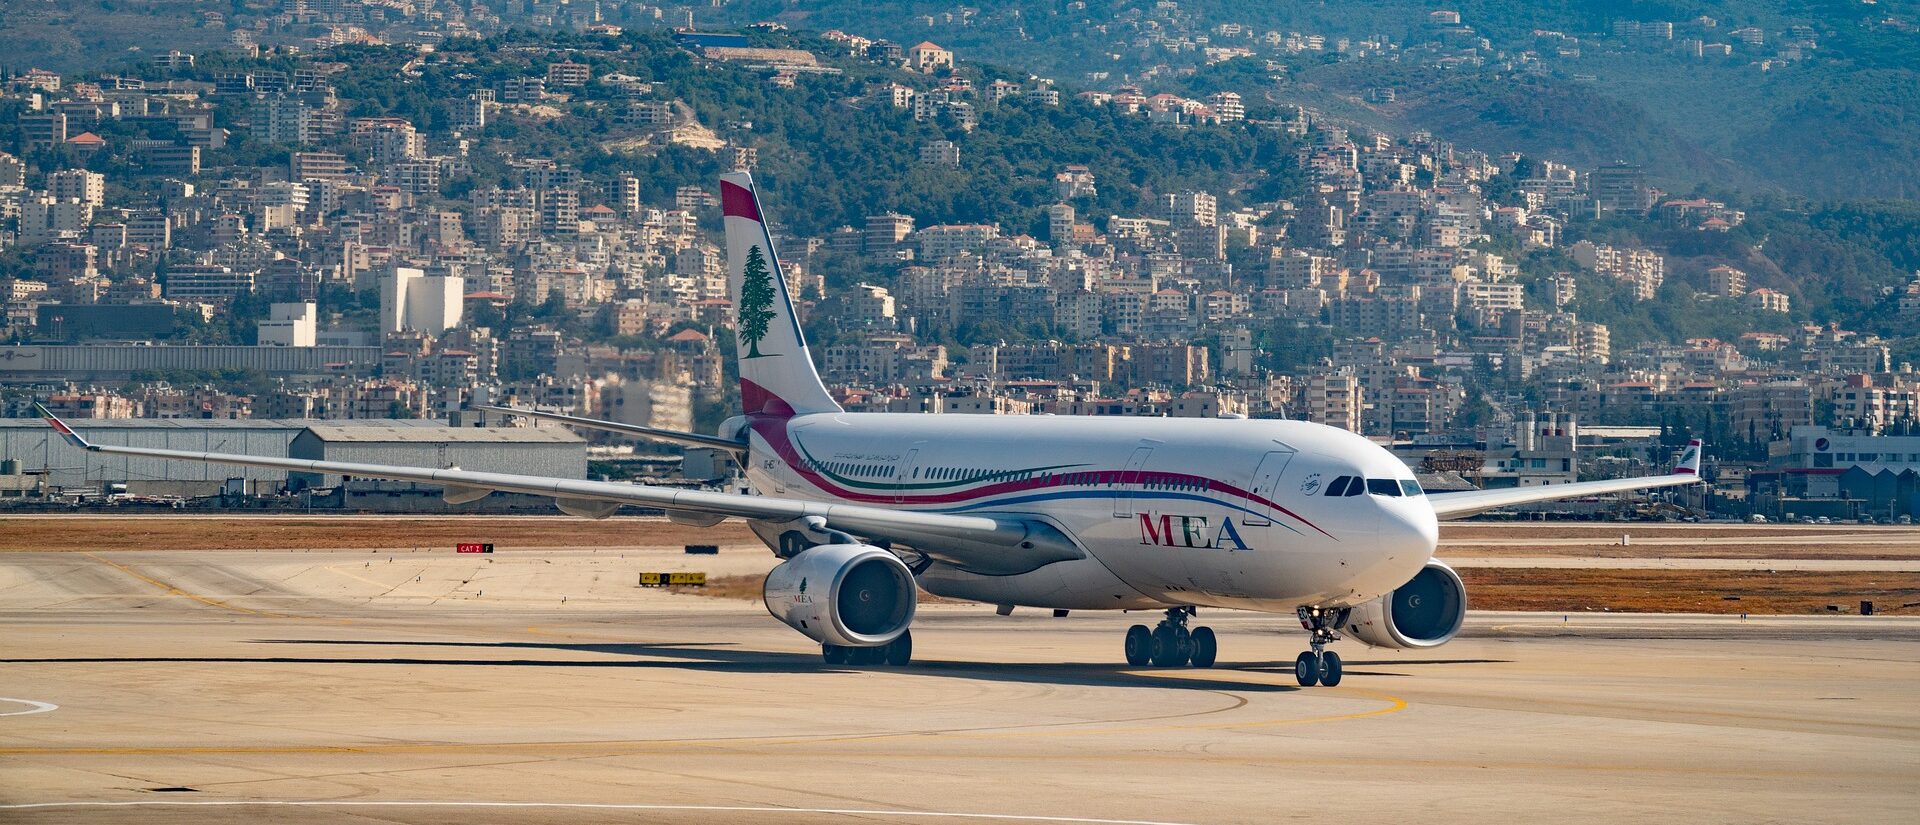 Quand l'avion du pape François se posera-t-il sur le sol libanais? | © INSTAGRAMfotograferin/Pixabay